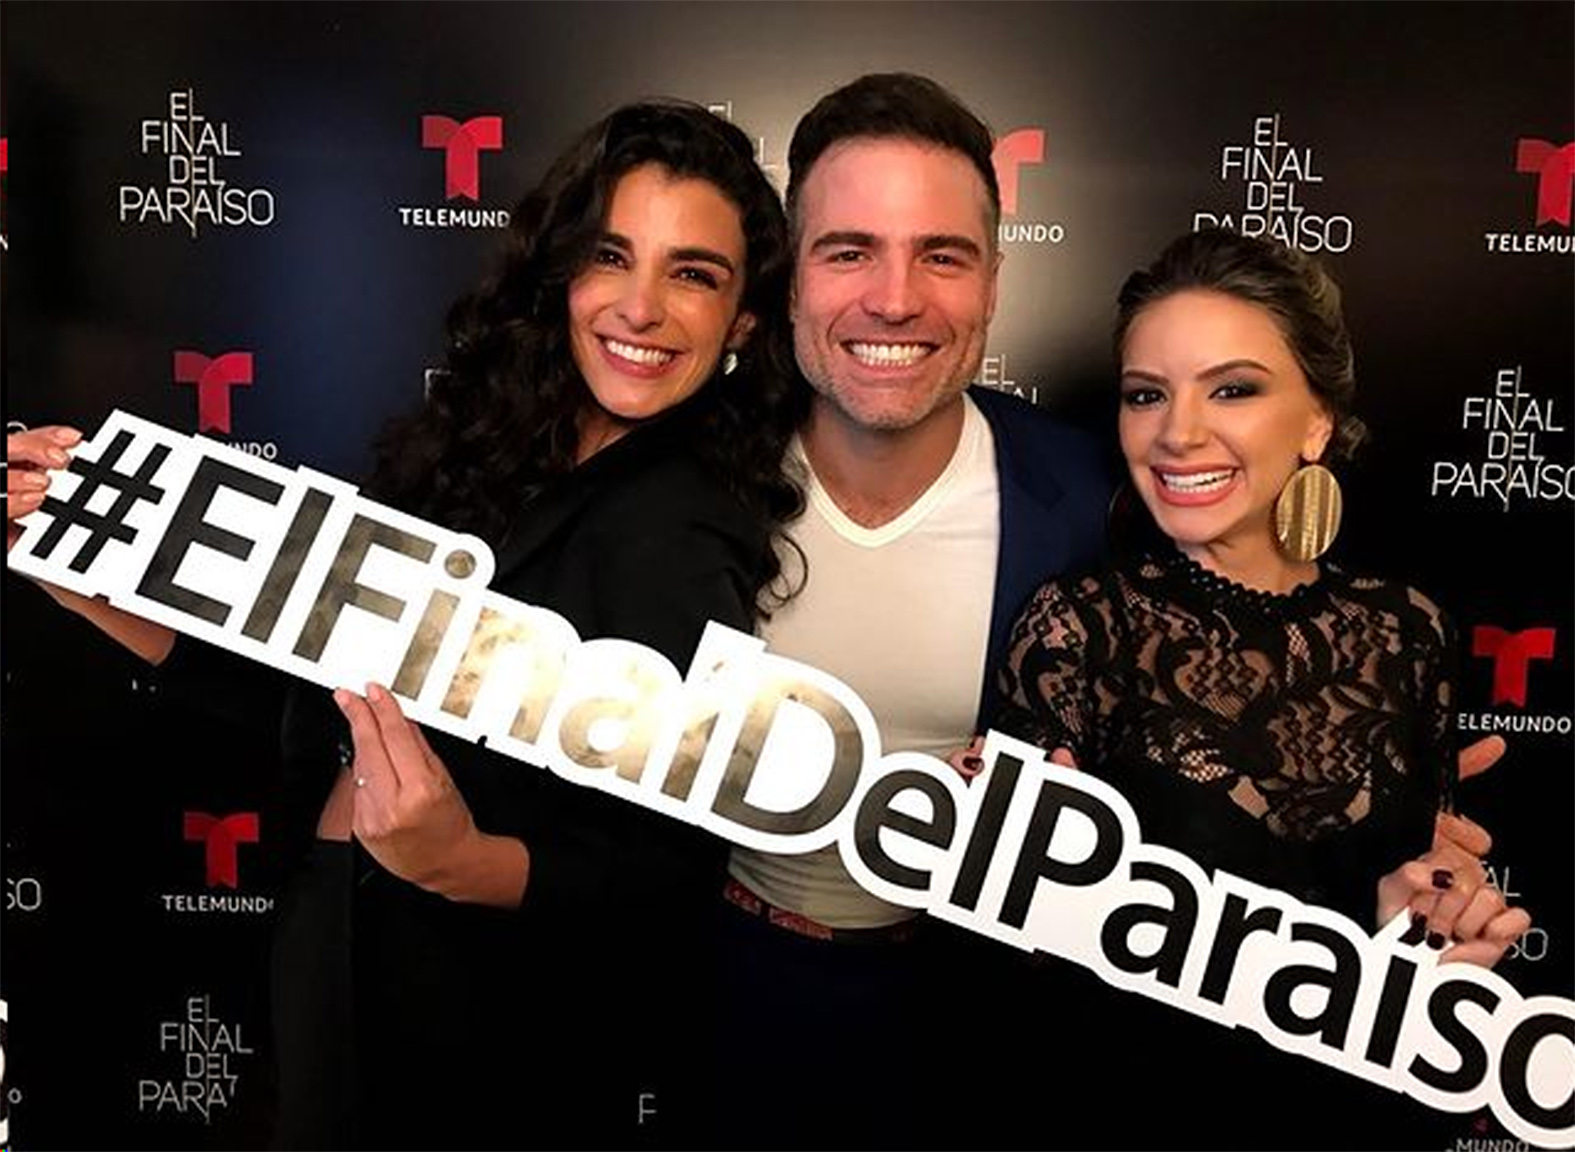 Actores ecuatorianos presentes en elenco de El Final del paraíso,  Televisión, Entretenimiento, juan pablo gamboa sin senos si hay paraiso 